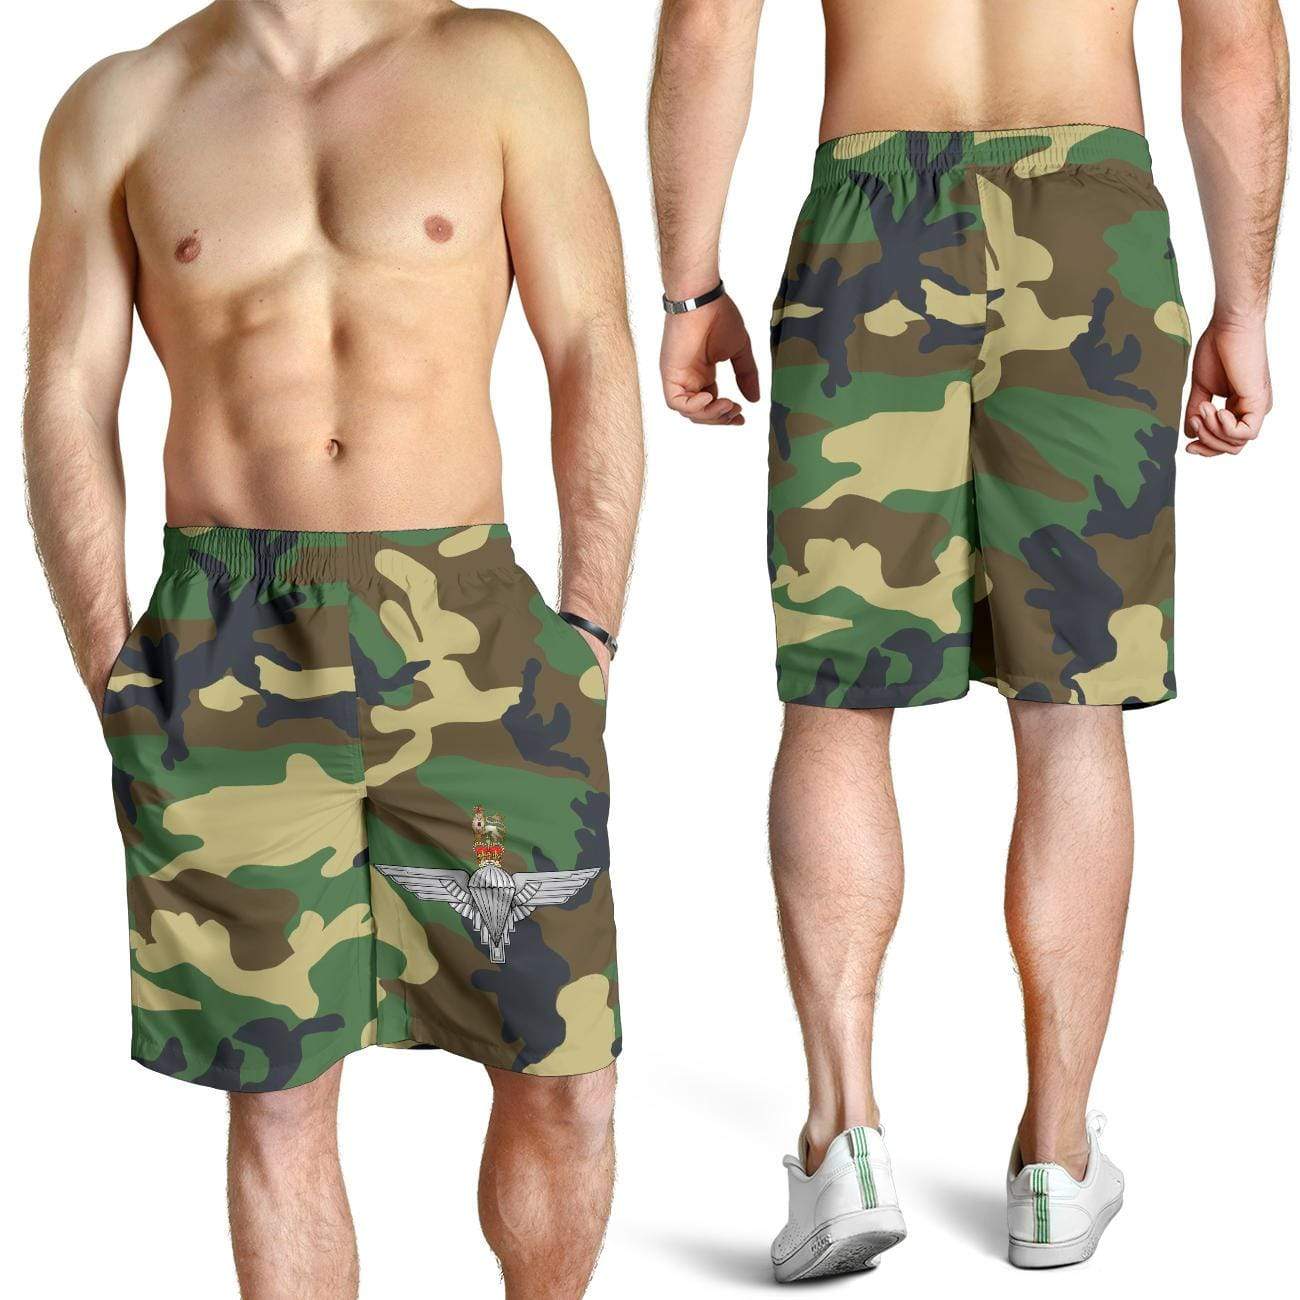 shorts Parachute Regiment Camo Men's Short